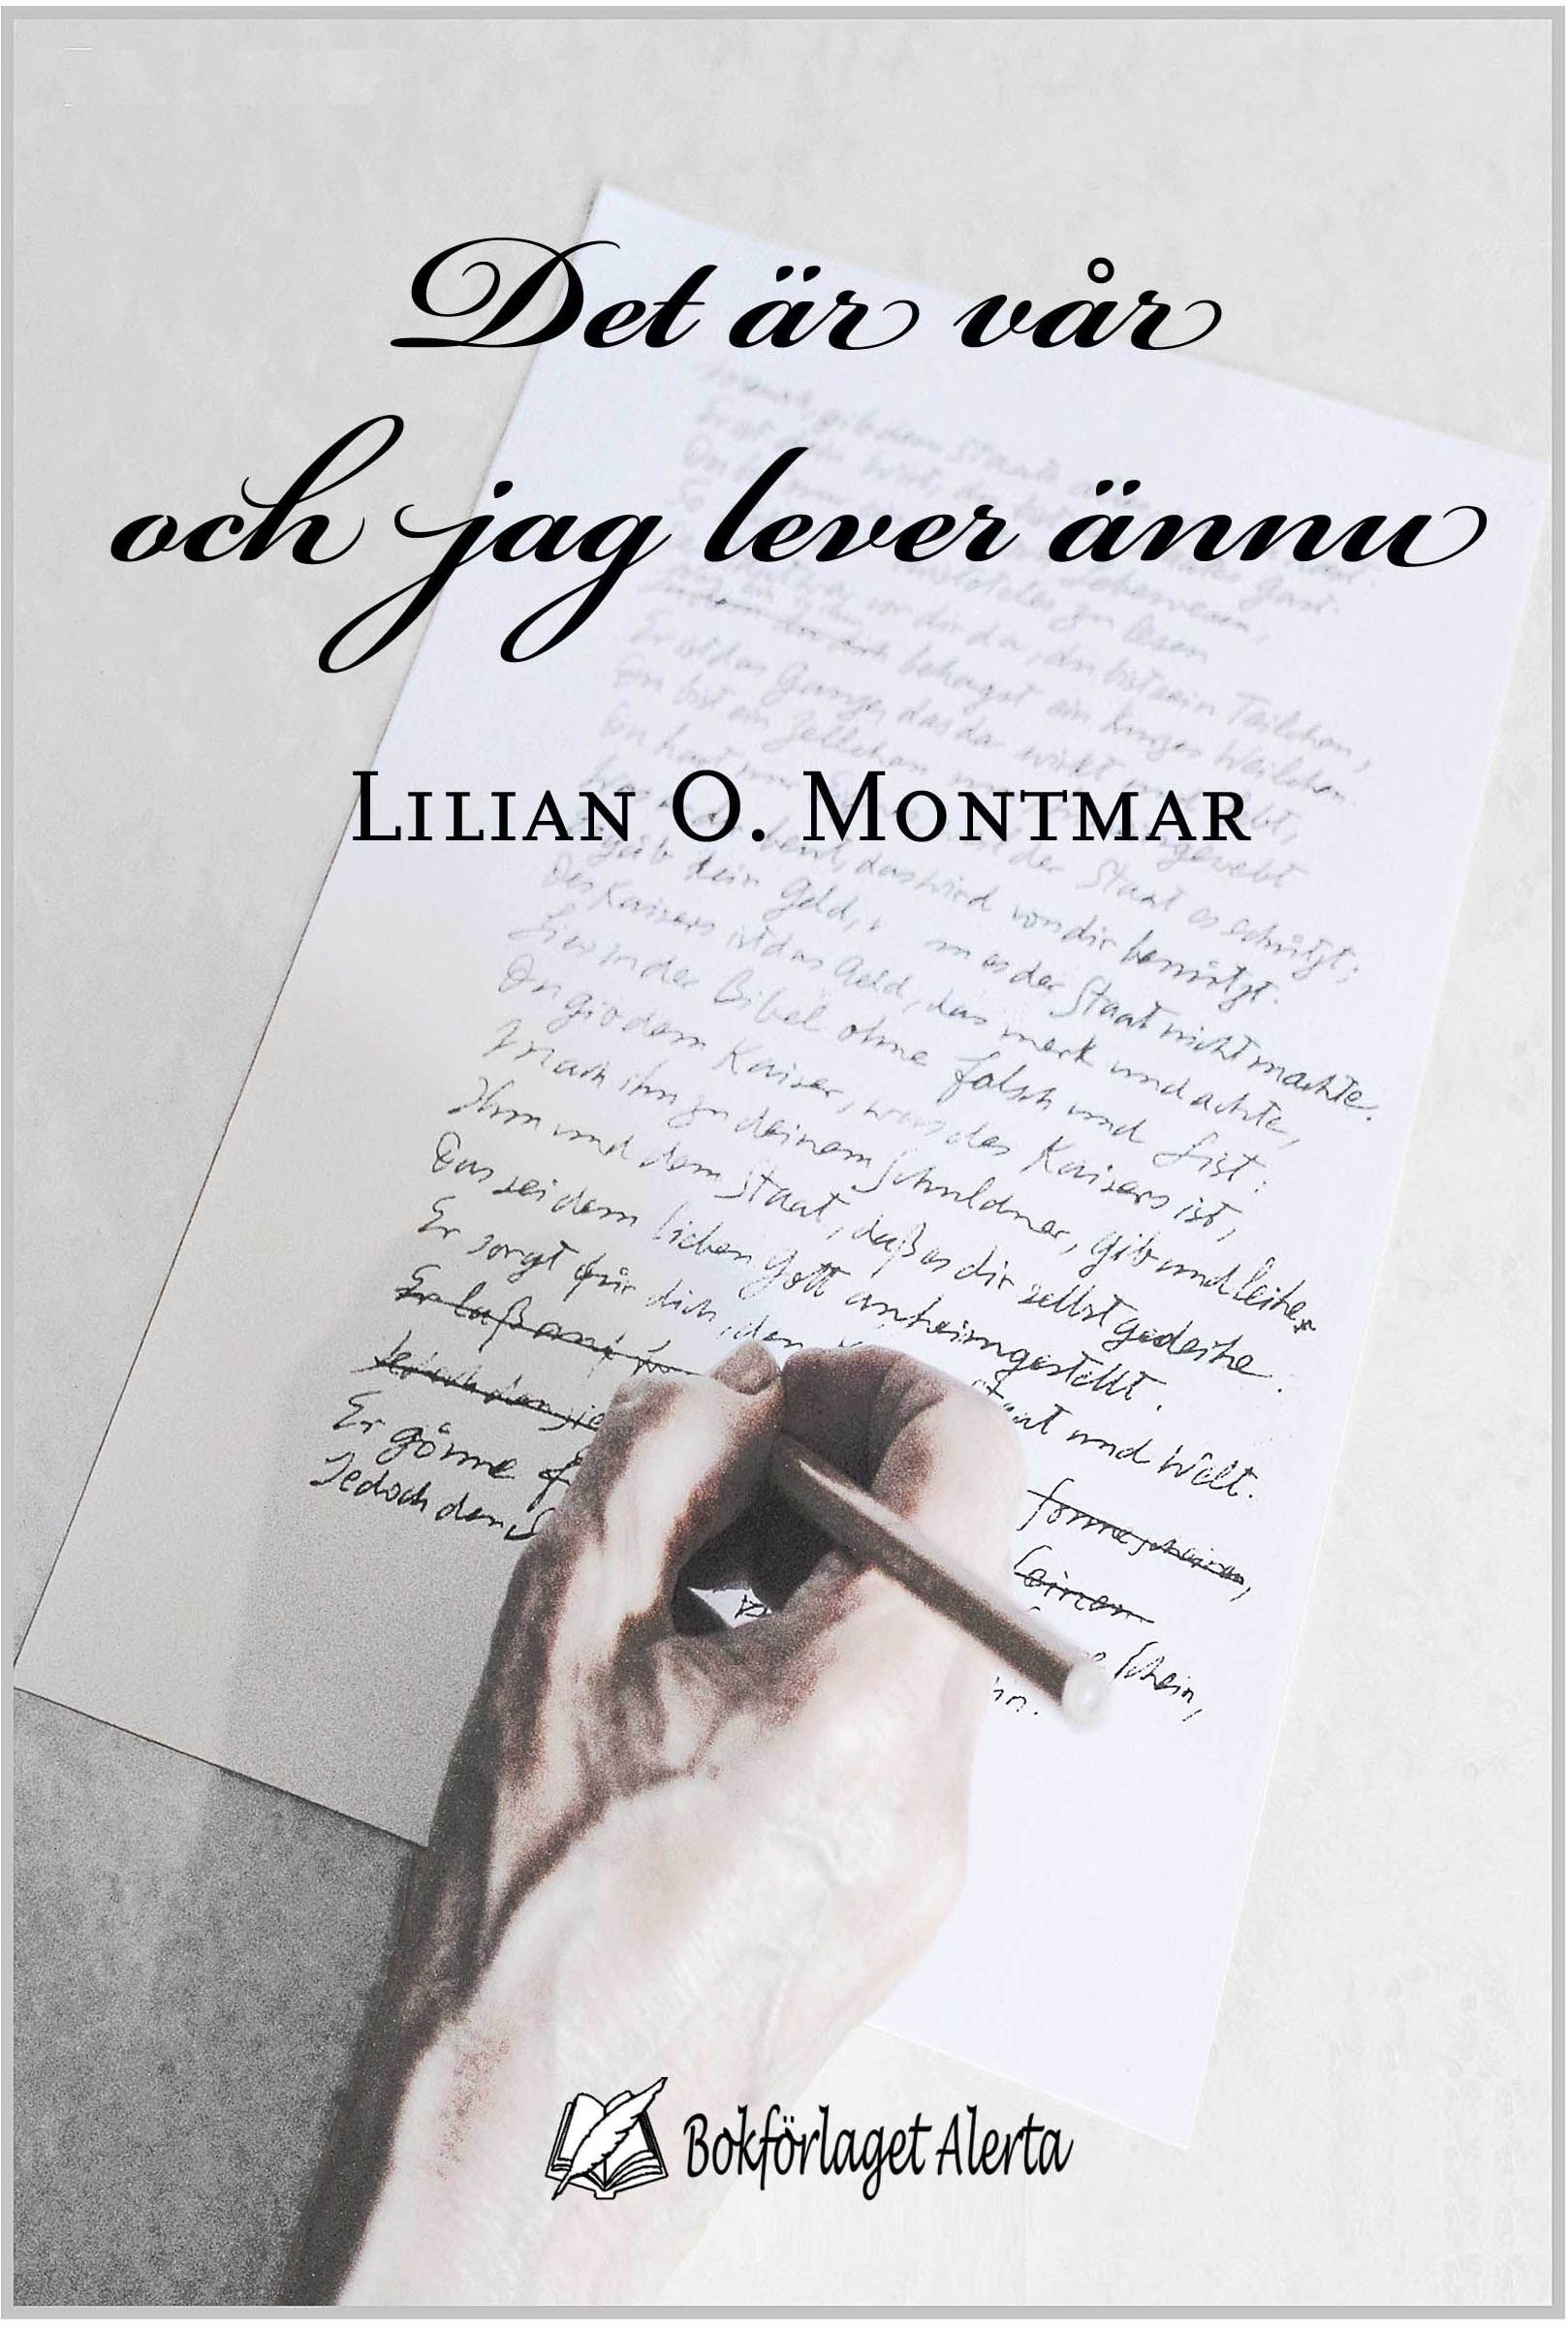 Det är vår och jag lever ännu, e-bog af Lilian O. Montmar